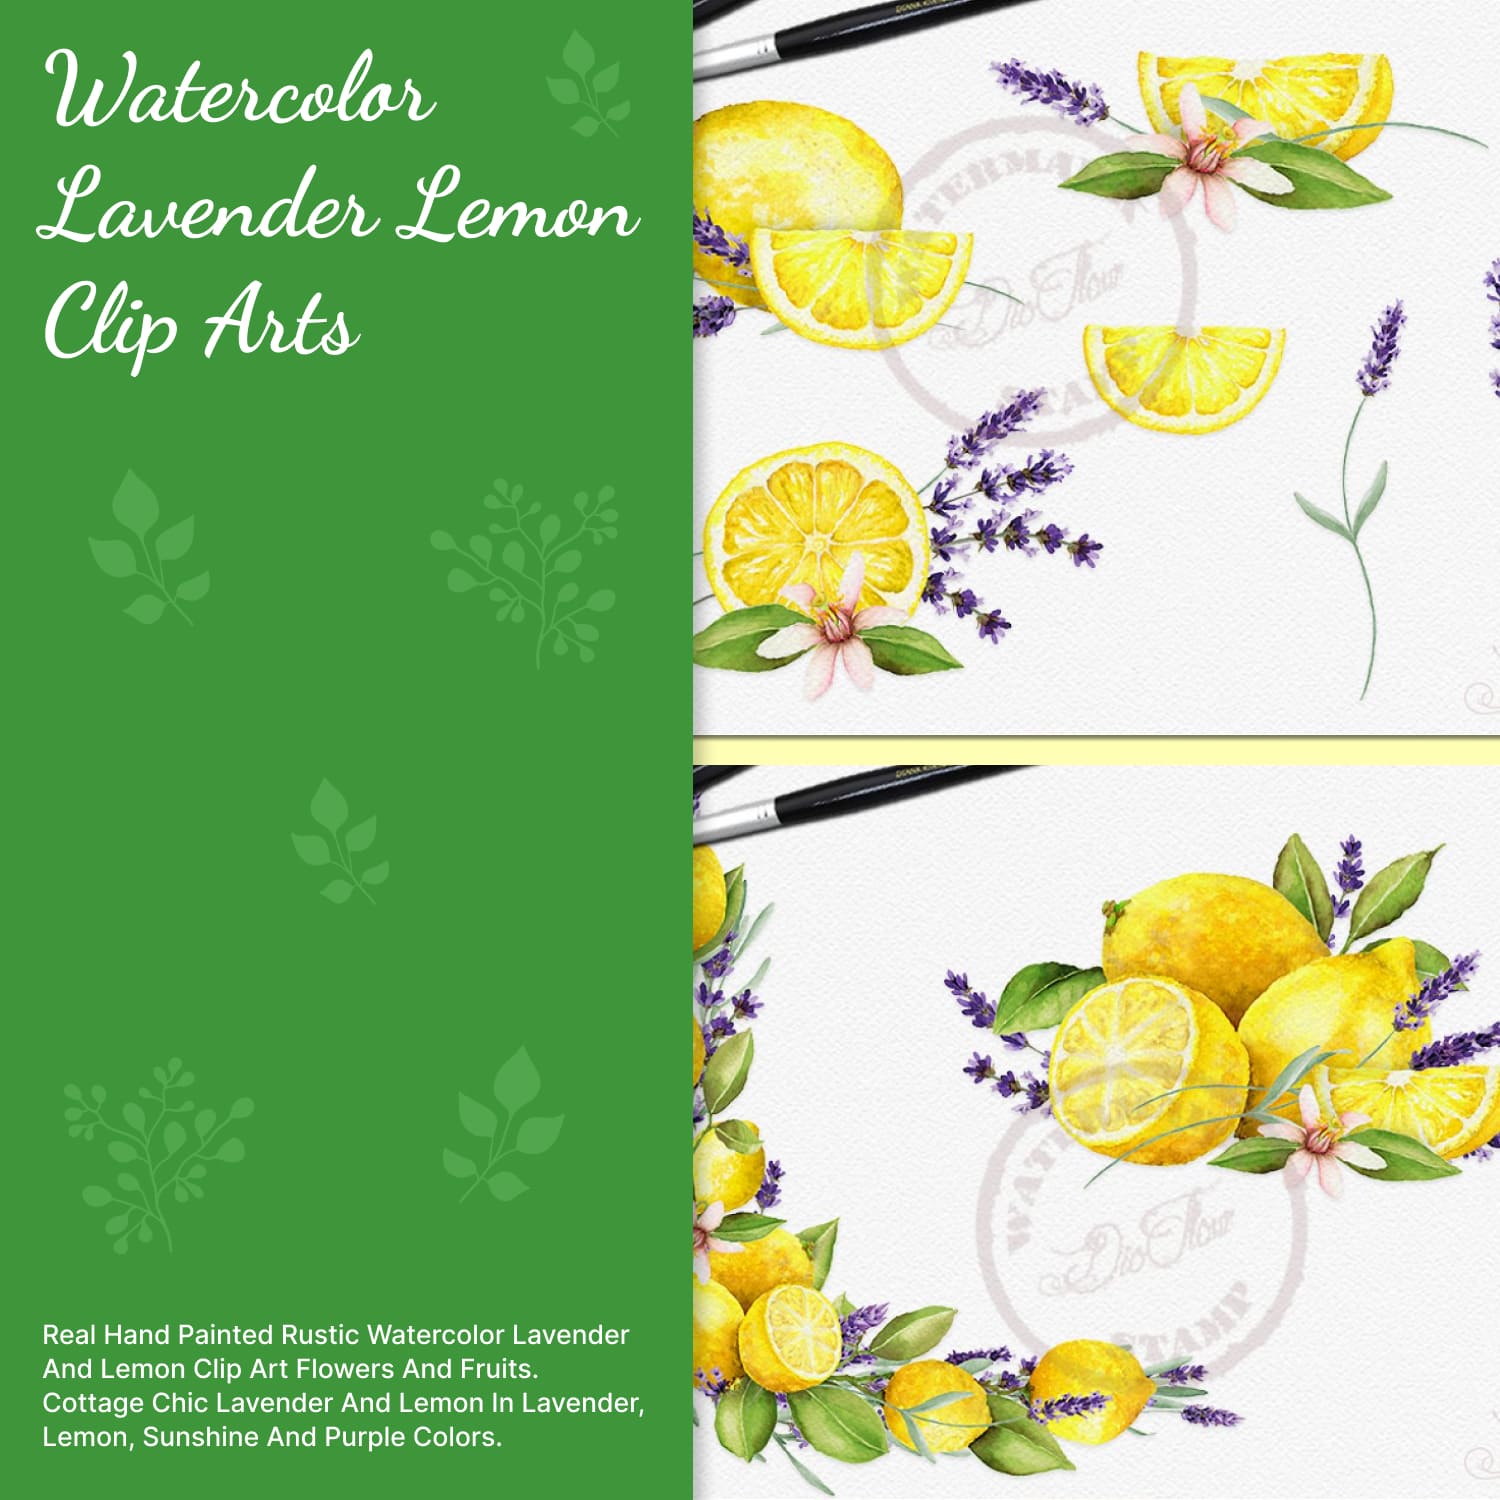 Watercolor Lavender Lemon Clip Arts cover.